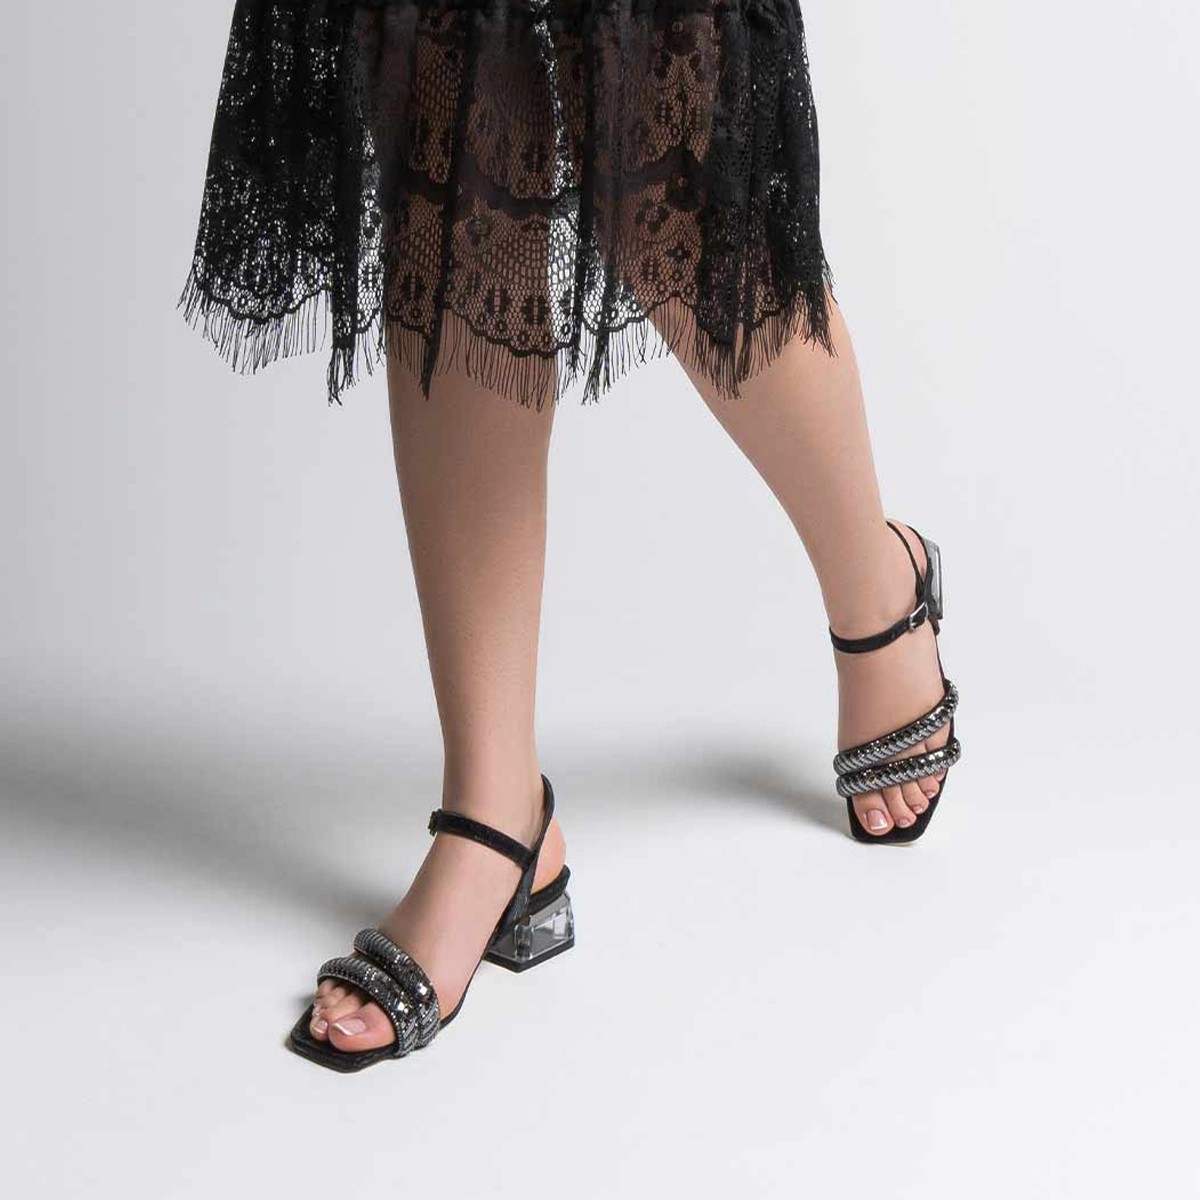 Tekstil Taşlı Kalın Kısa Topuklu Sandalet - Siyah